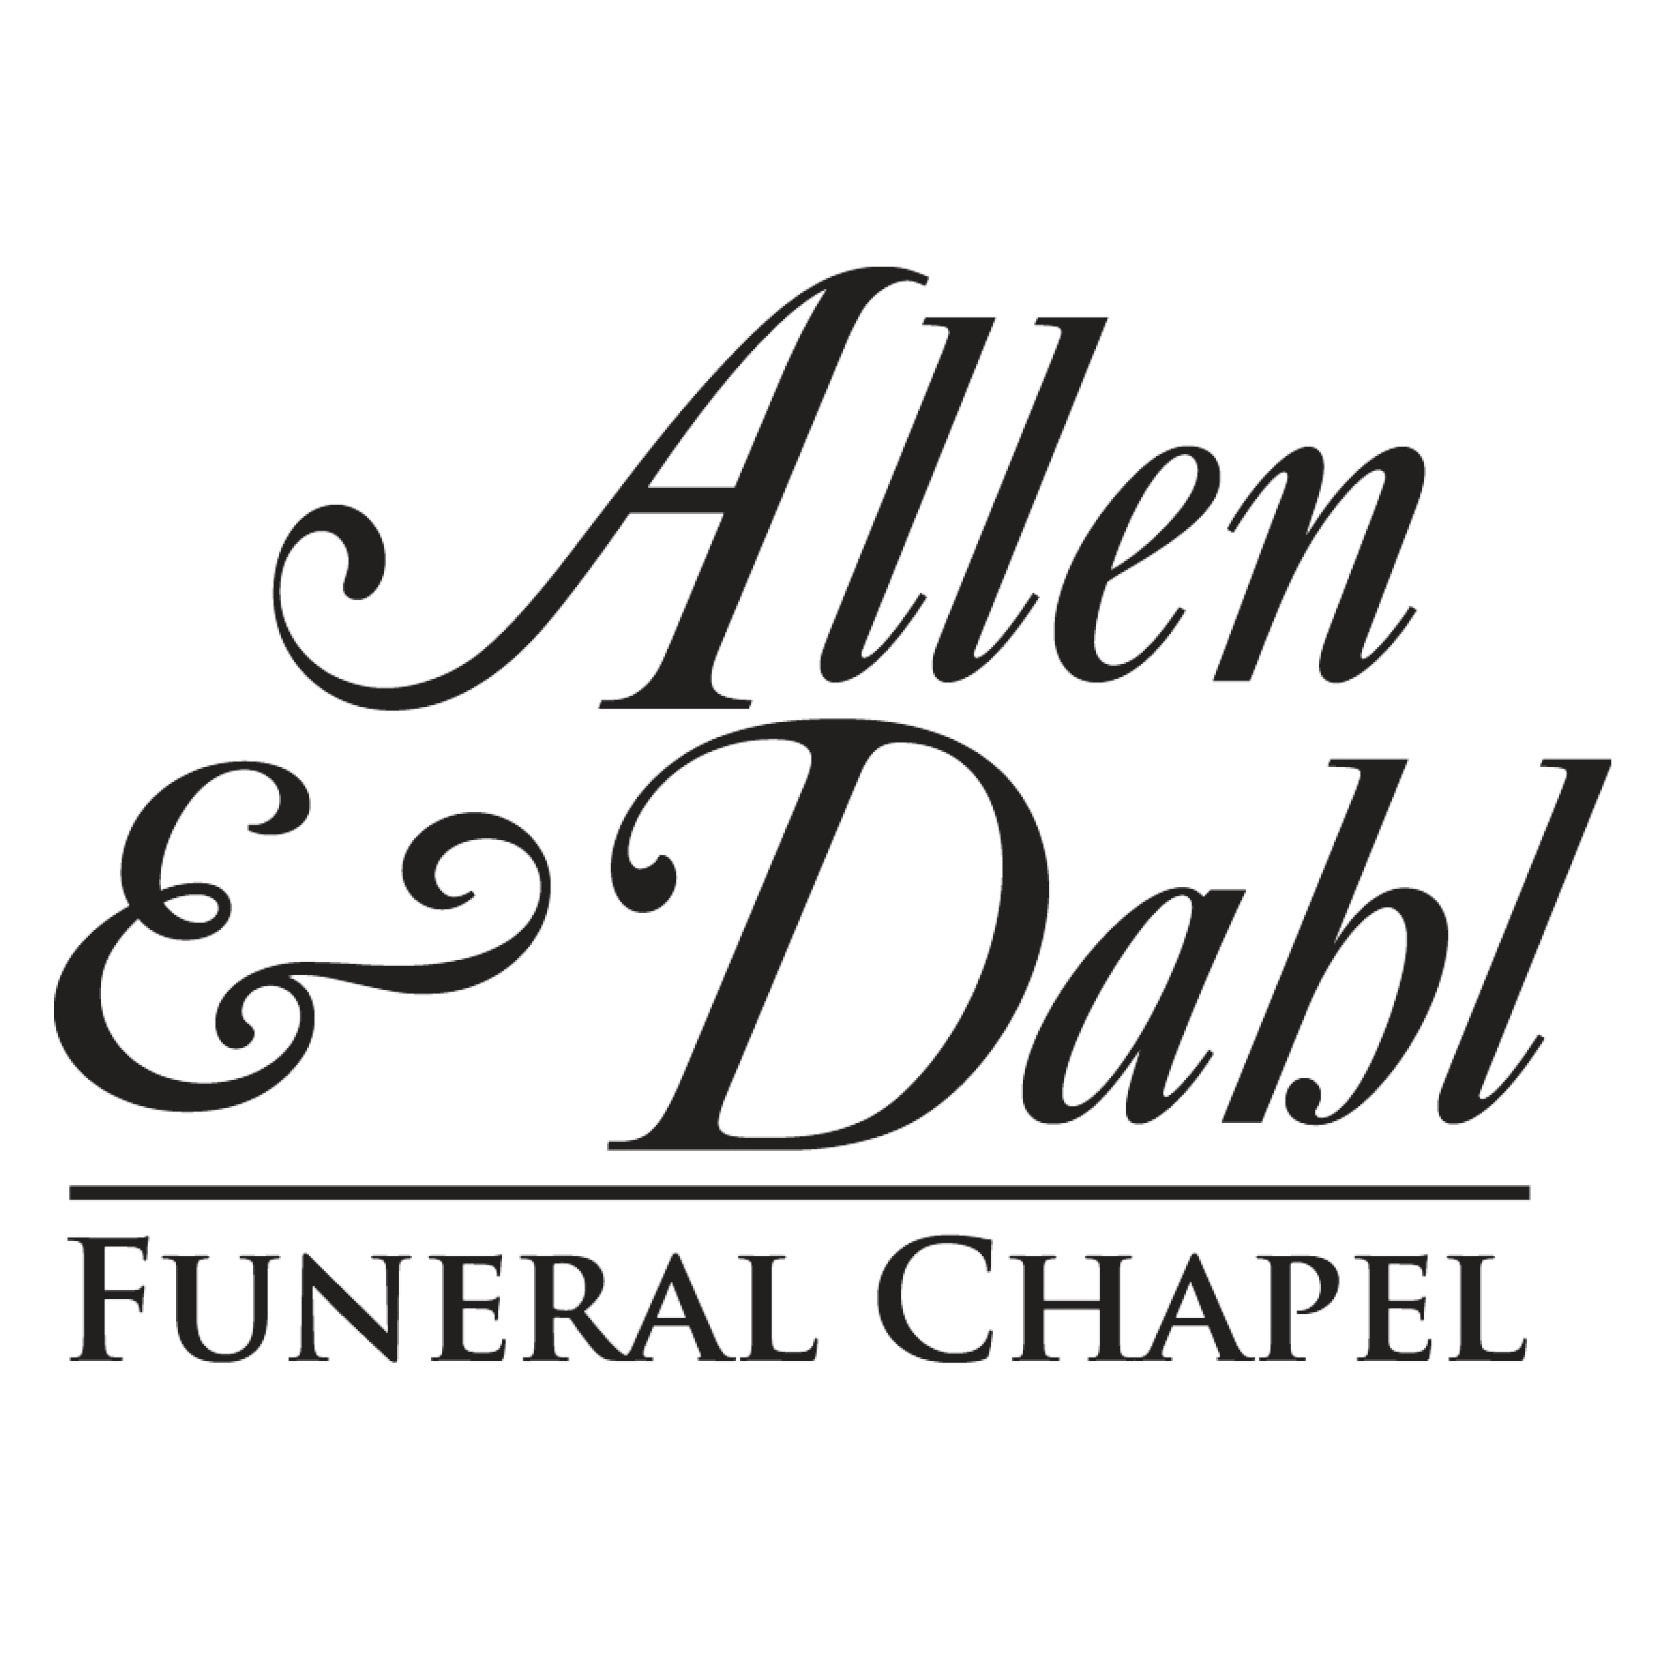 Allen & Dahl Funeral Chapel
2655 Eureka Way
Redding, CA 96001 Allen & Dahl Funeral Chapel Redding (530)243-1525